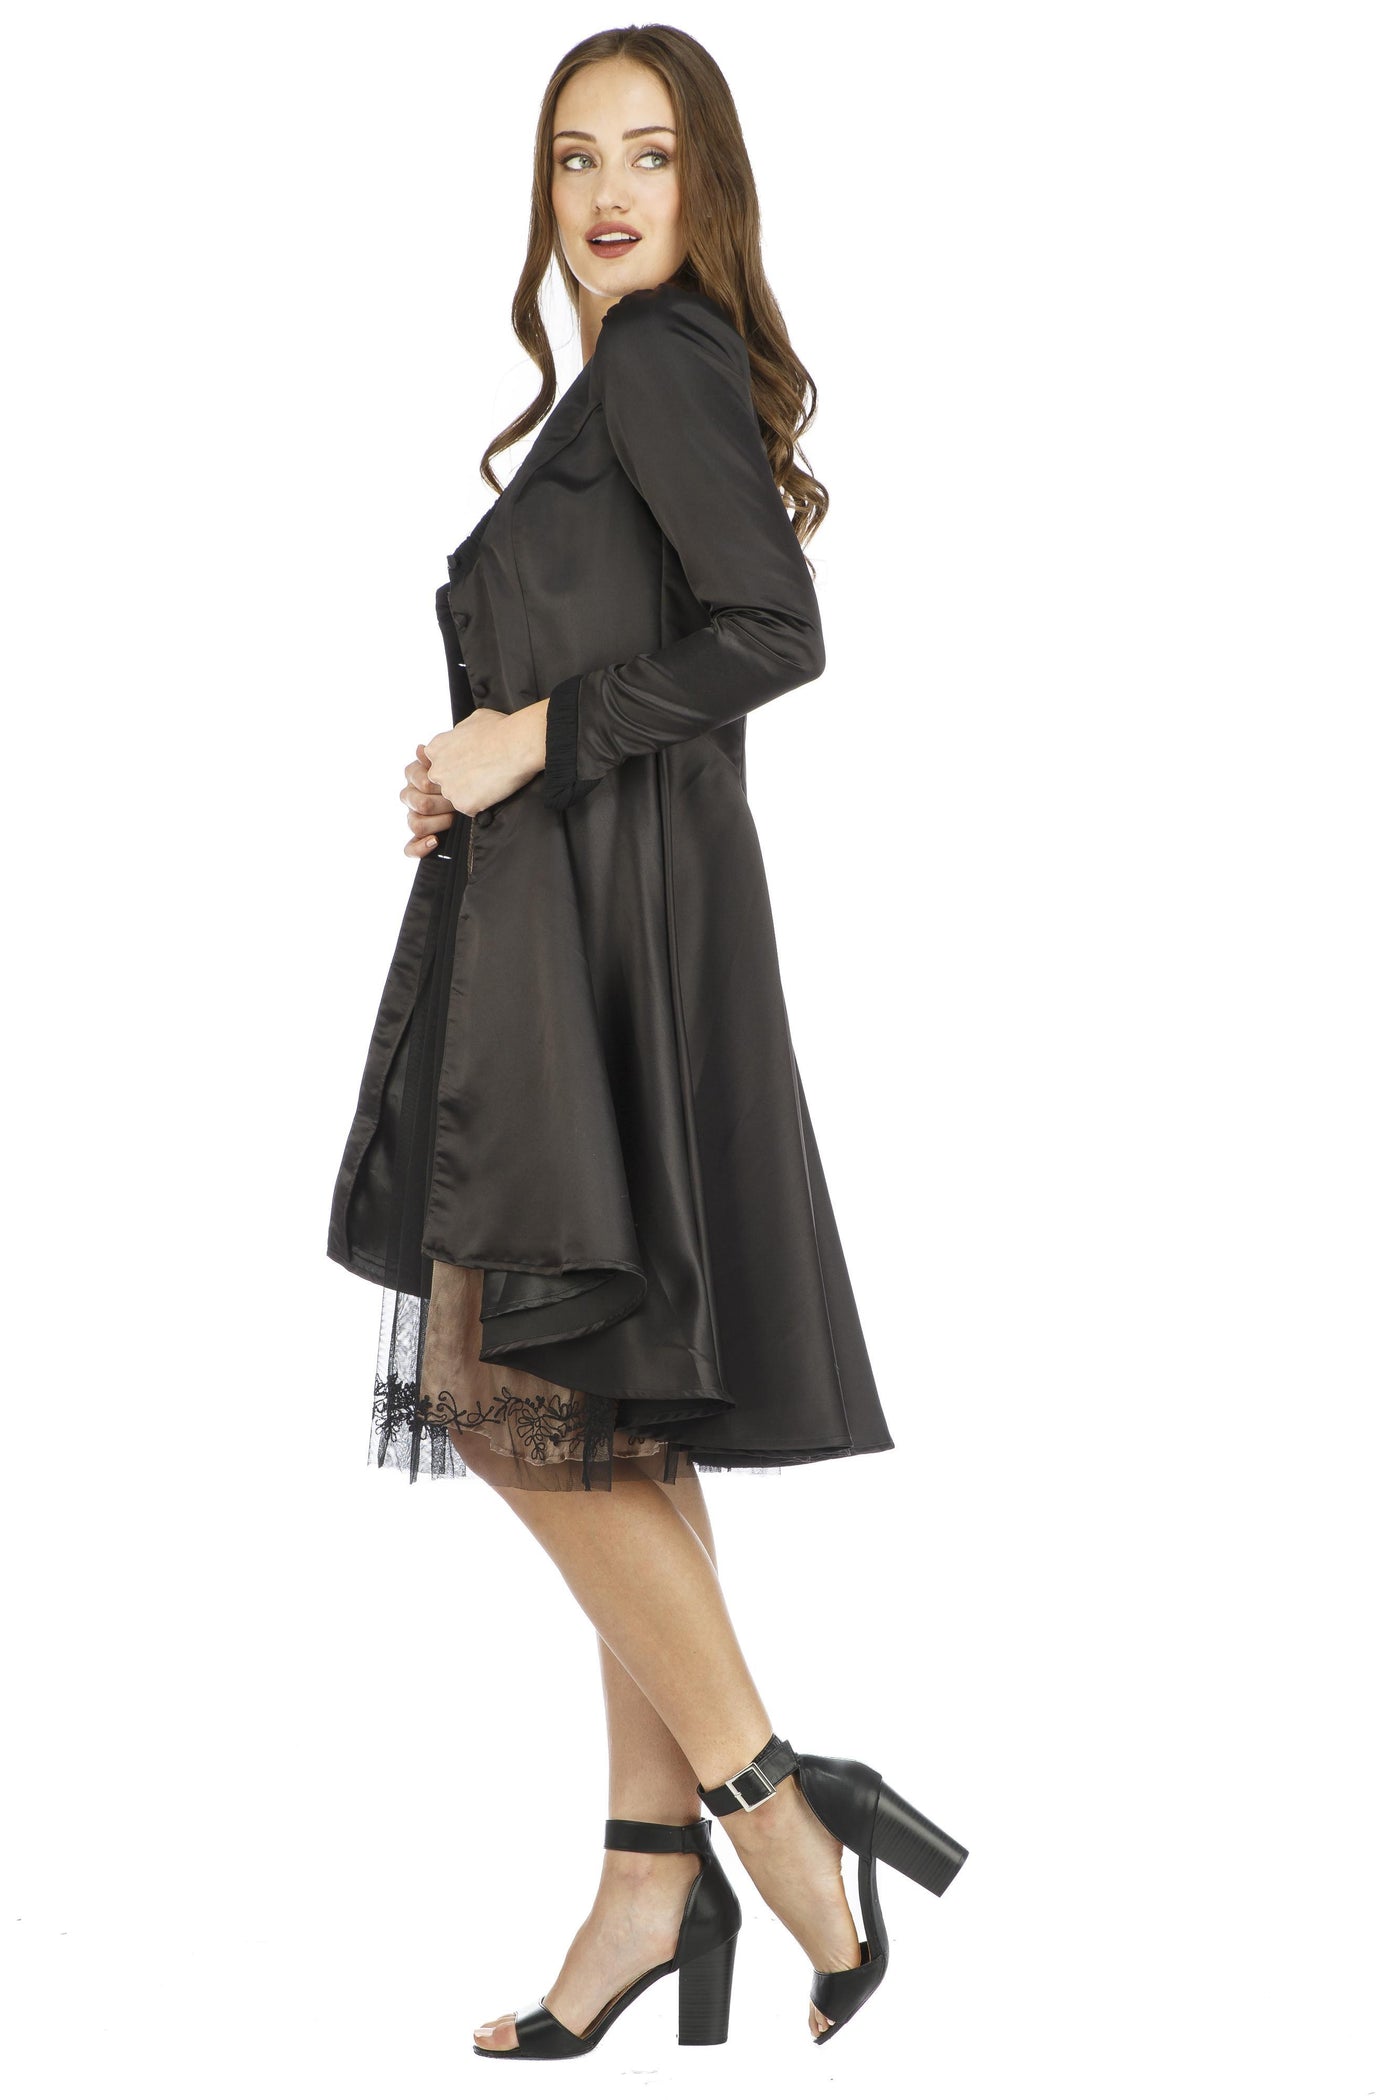 Adele Vintage Style Jacket AL-433 in Black by Nataya